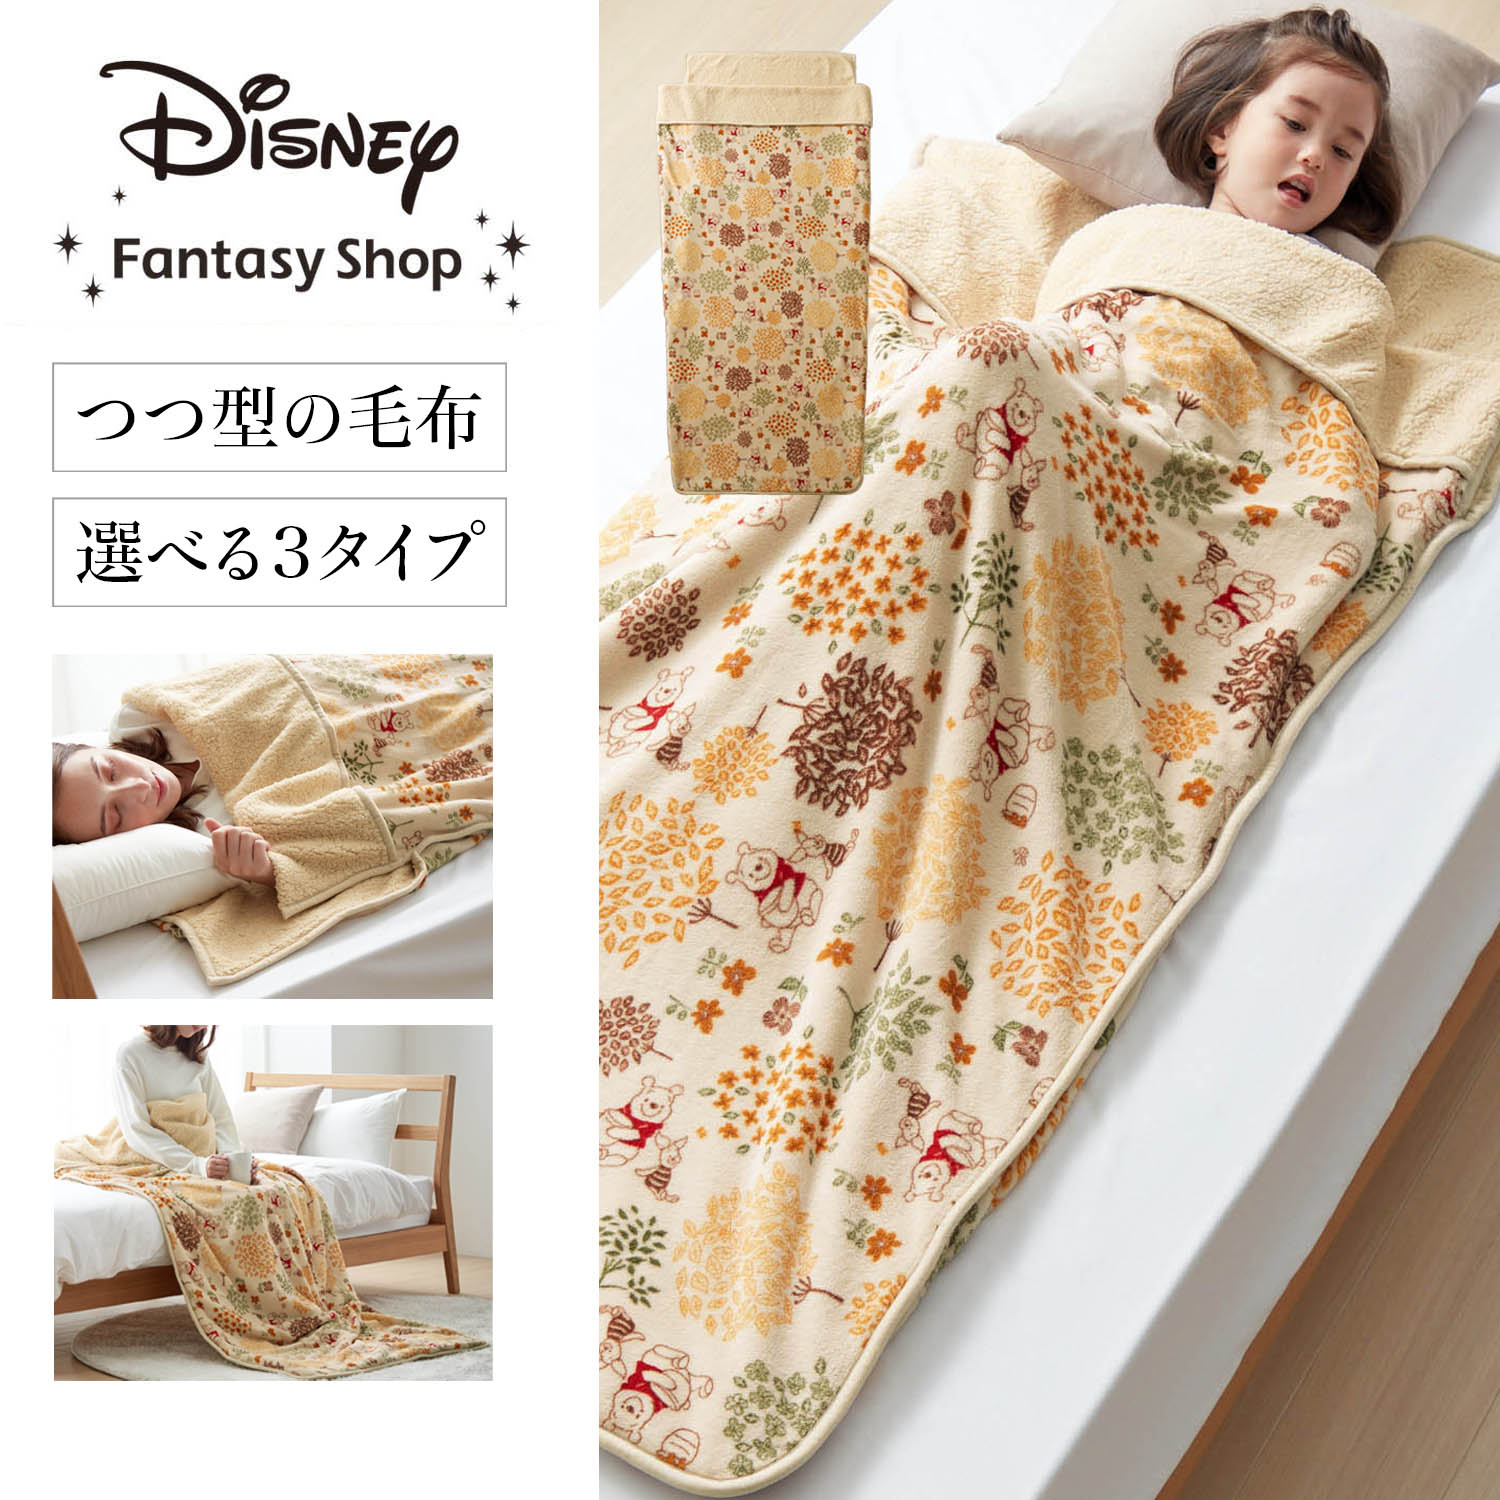 【ディズニー/Disney】【新柄登場】 マイクロファイバーのつつ毛布(選べるキャラクター)画像